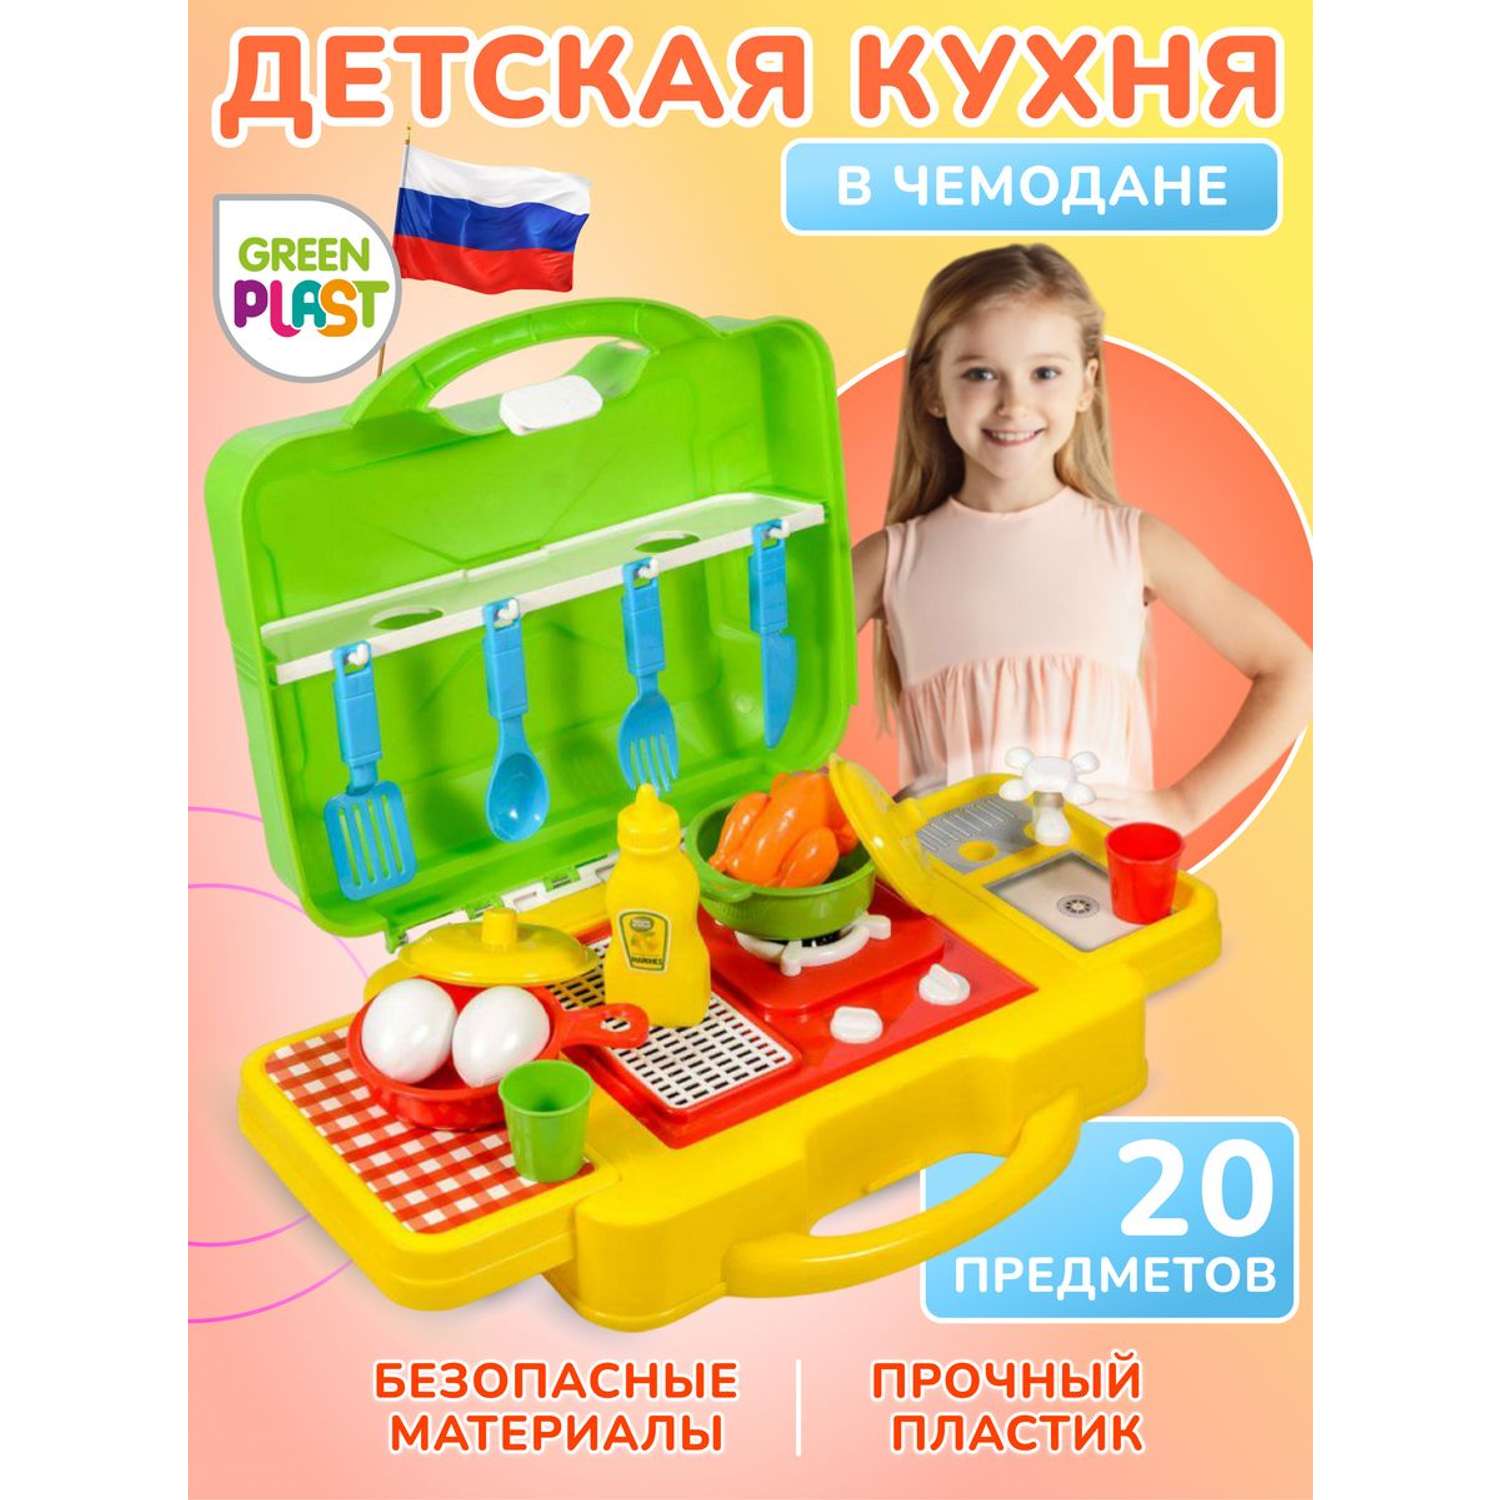 Детская игрушечная кухня Green Plast посудка и продукты в чемодане - фото 1